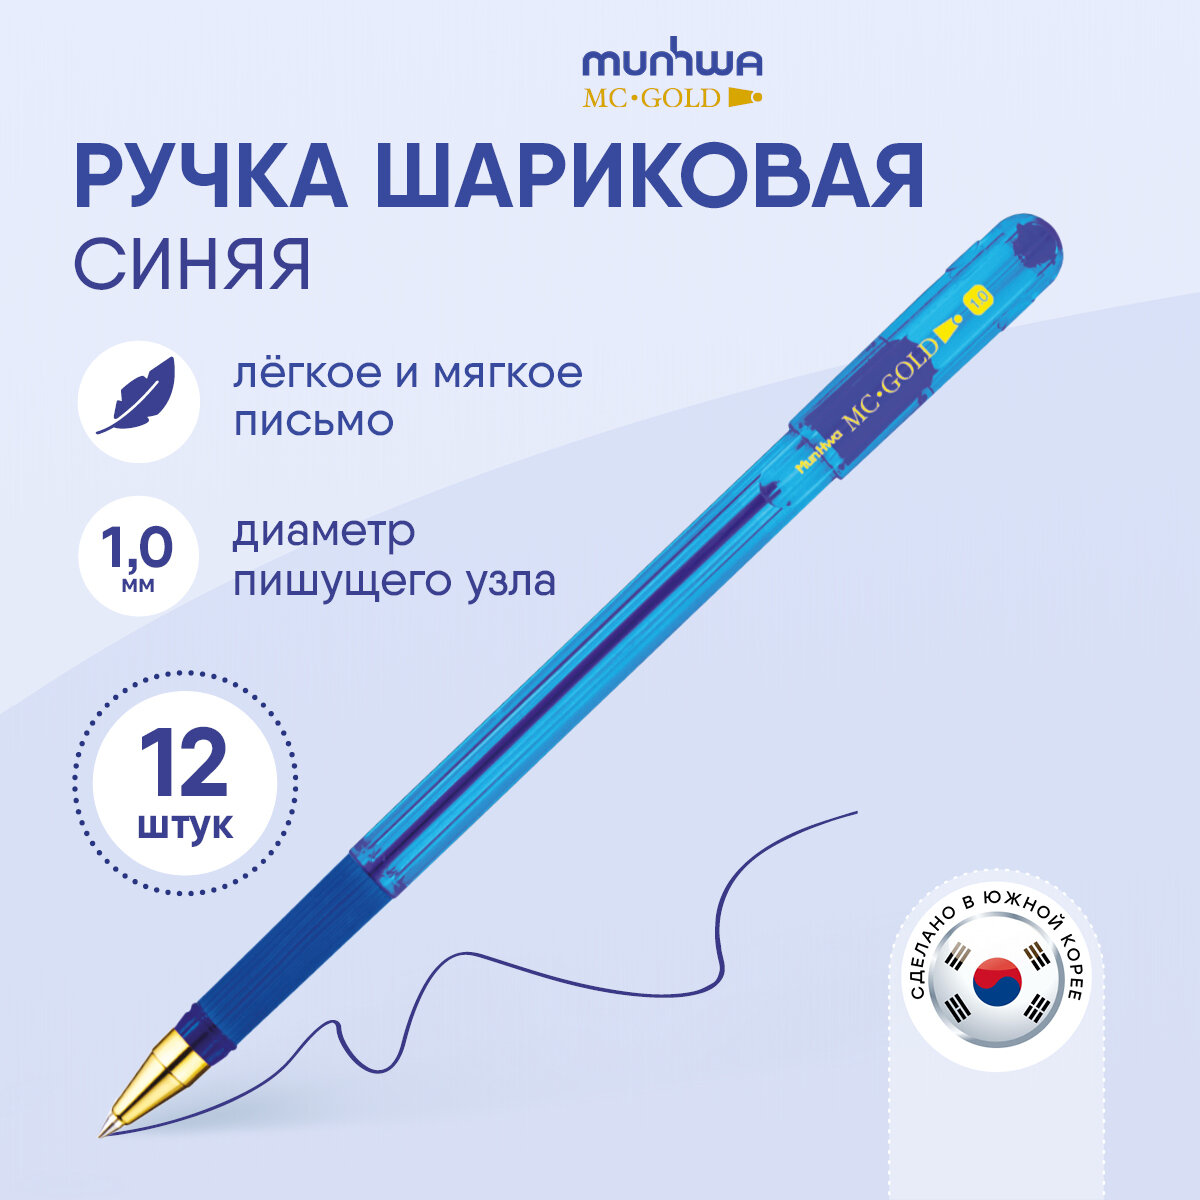 Ручки шариковые синие набор для школы 12 штук/ комплект MunHwa "MC Gold" с тонким стержнем, масляные чернила, линия письма 1 мм, /канцелярия для офиса